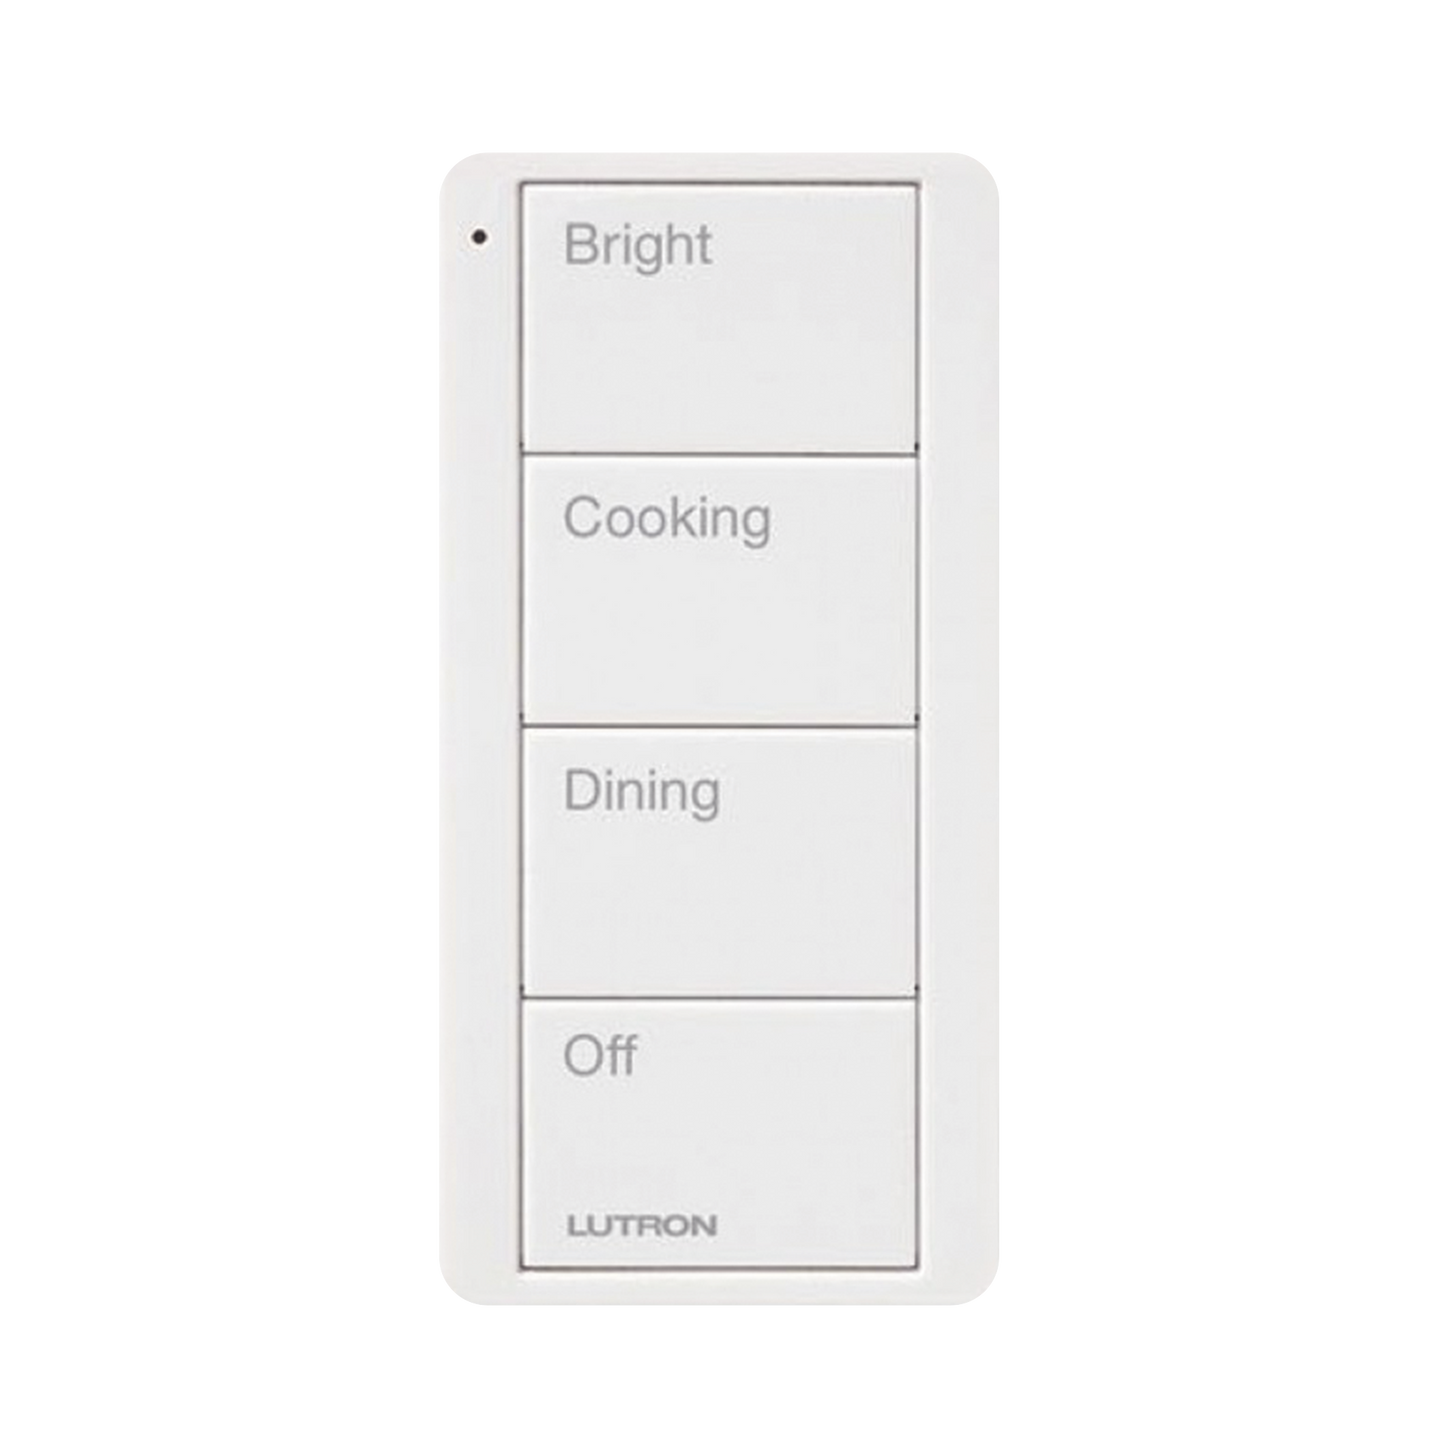 Control remoto inalambrico PICO, con escenas predefinidas para espacio en cocina.